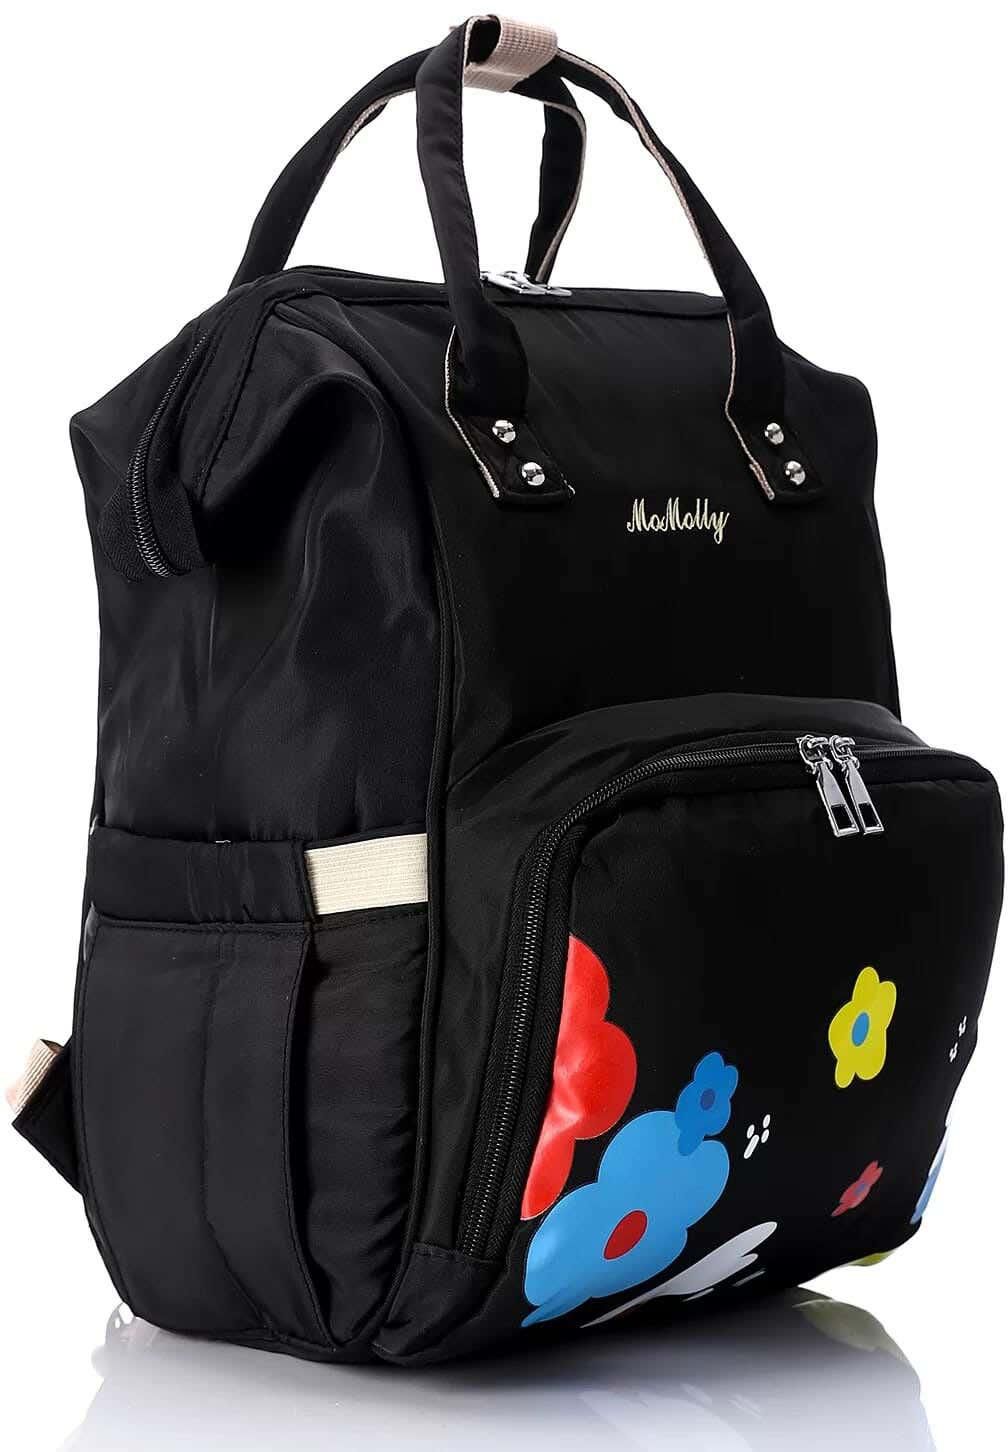 Get Crossland Waterproof Baby Diaper Backpack, 18 Inch - Black with best offers | Raneen.com